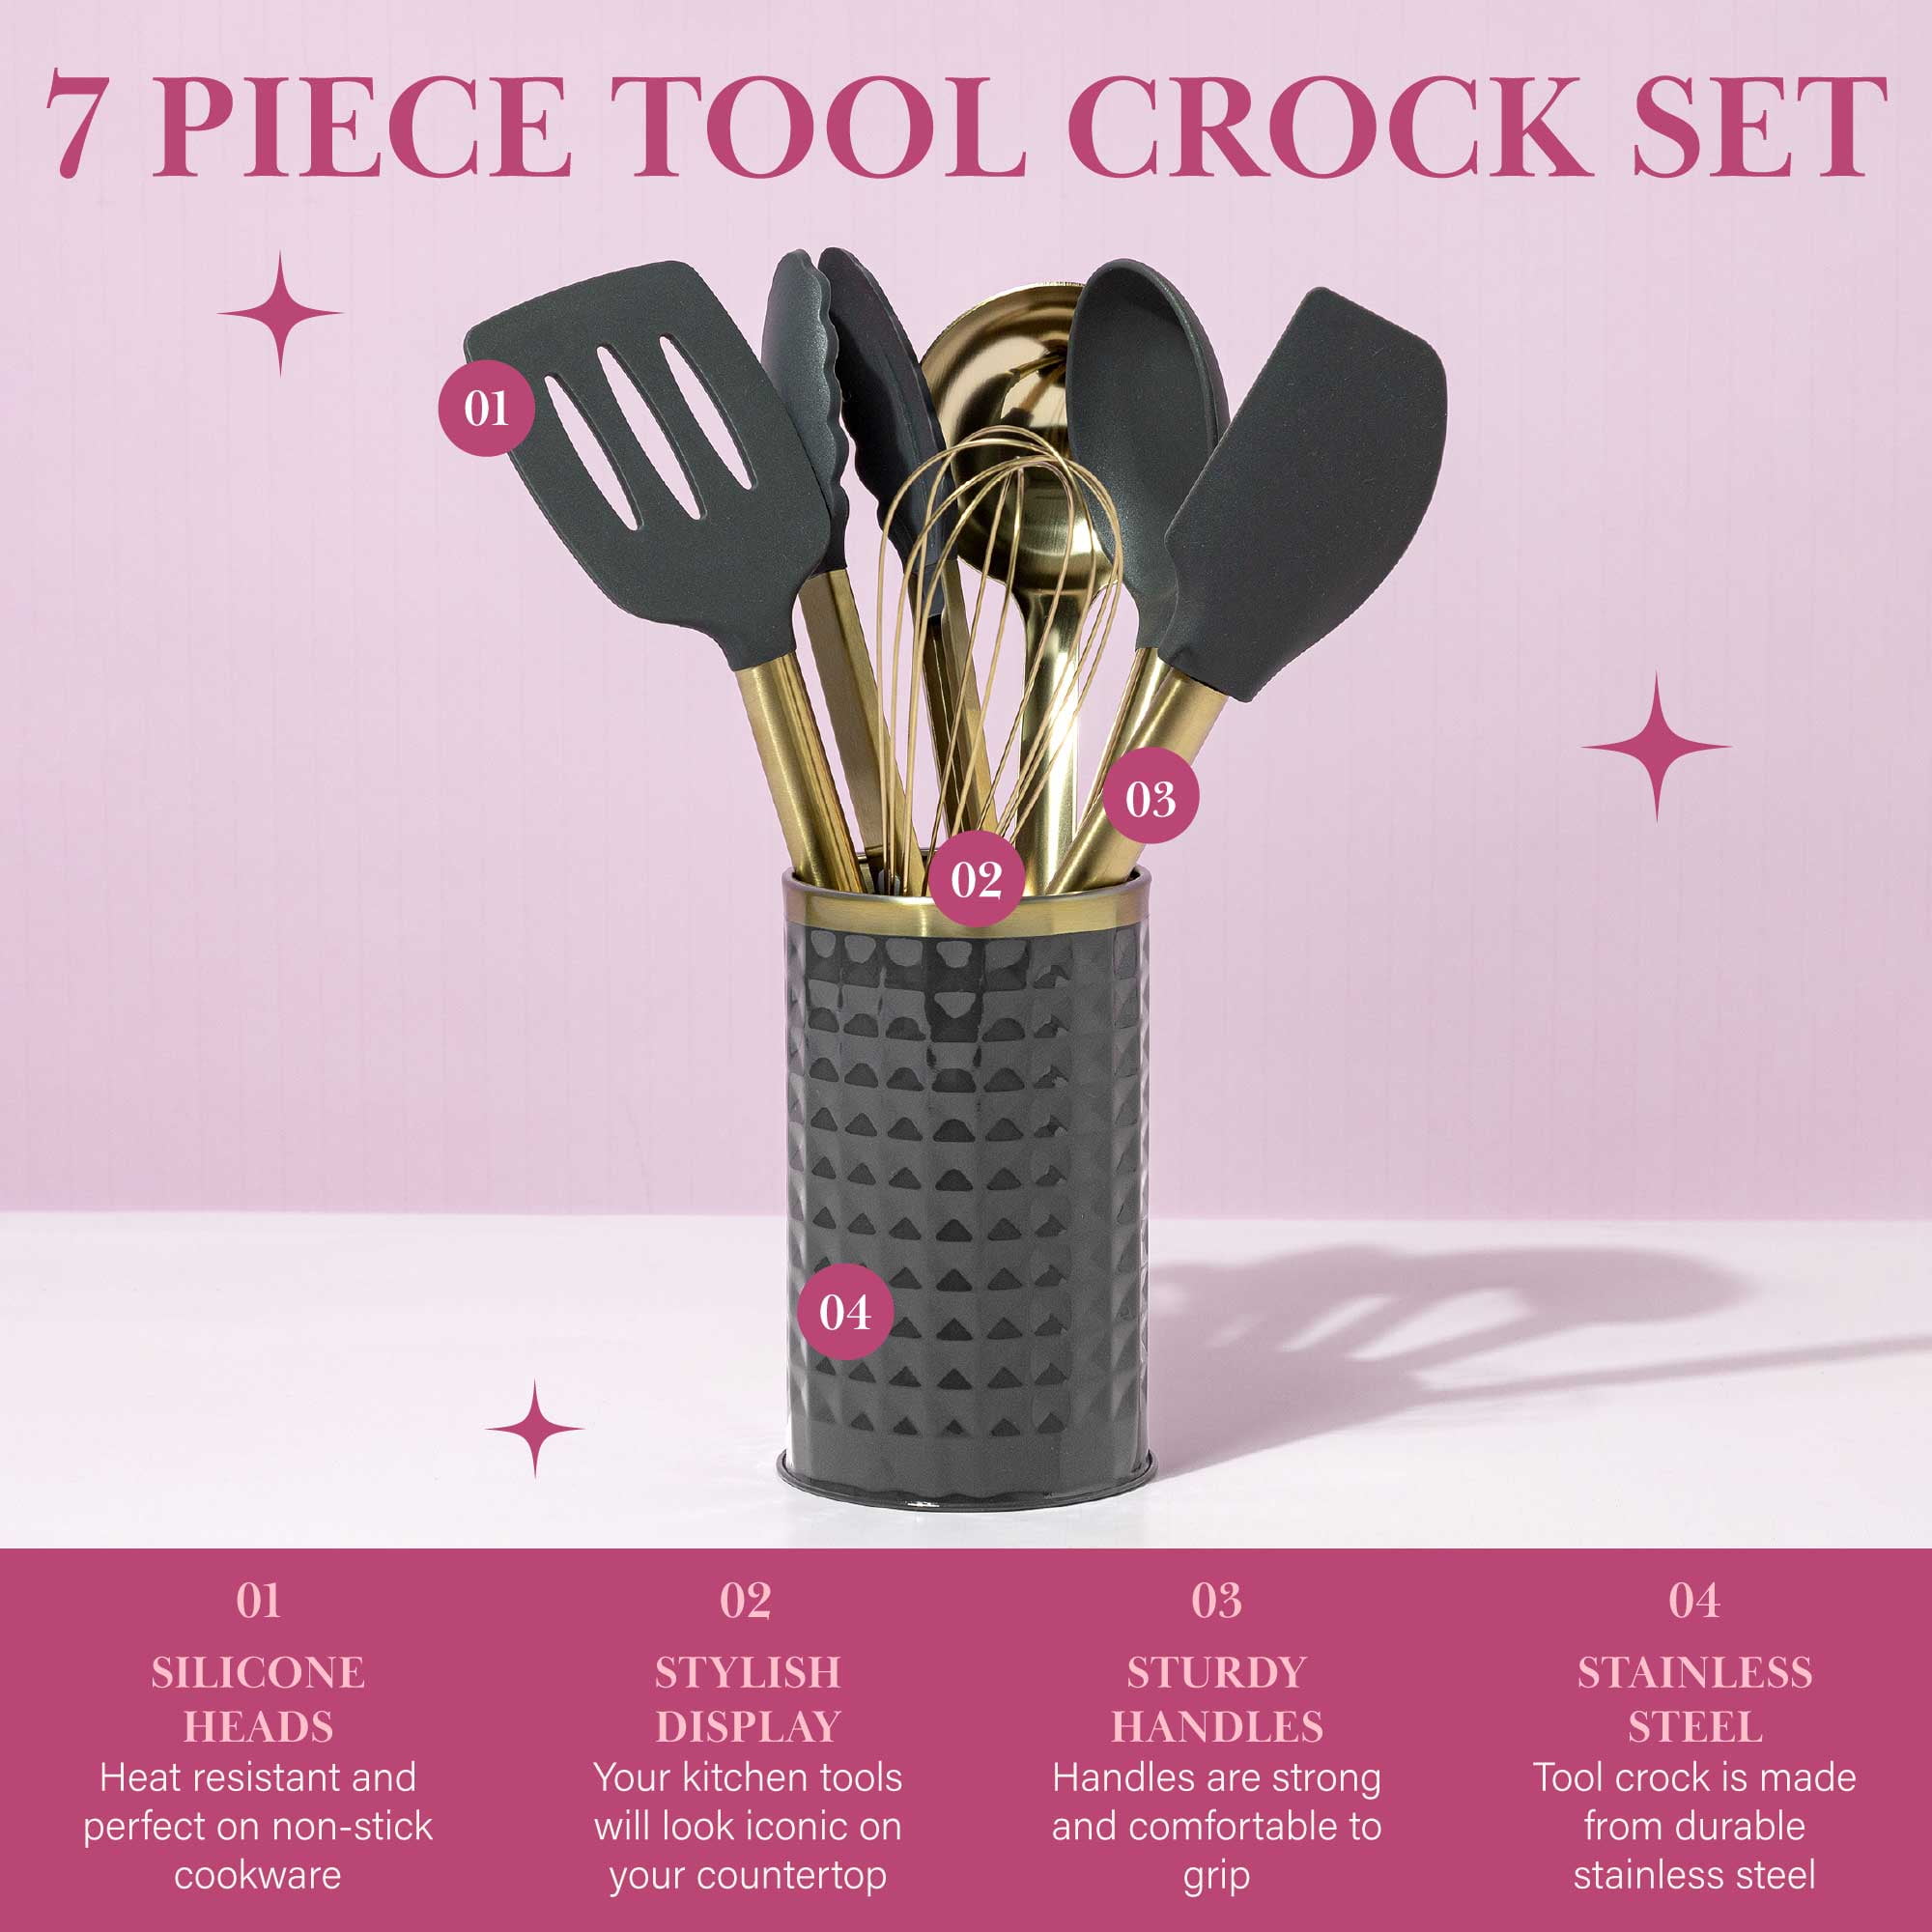 7 Piece Pink Cookware Set